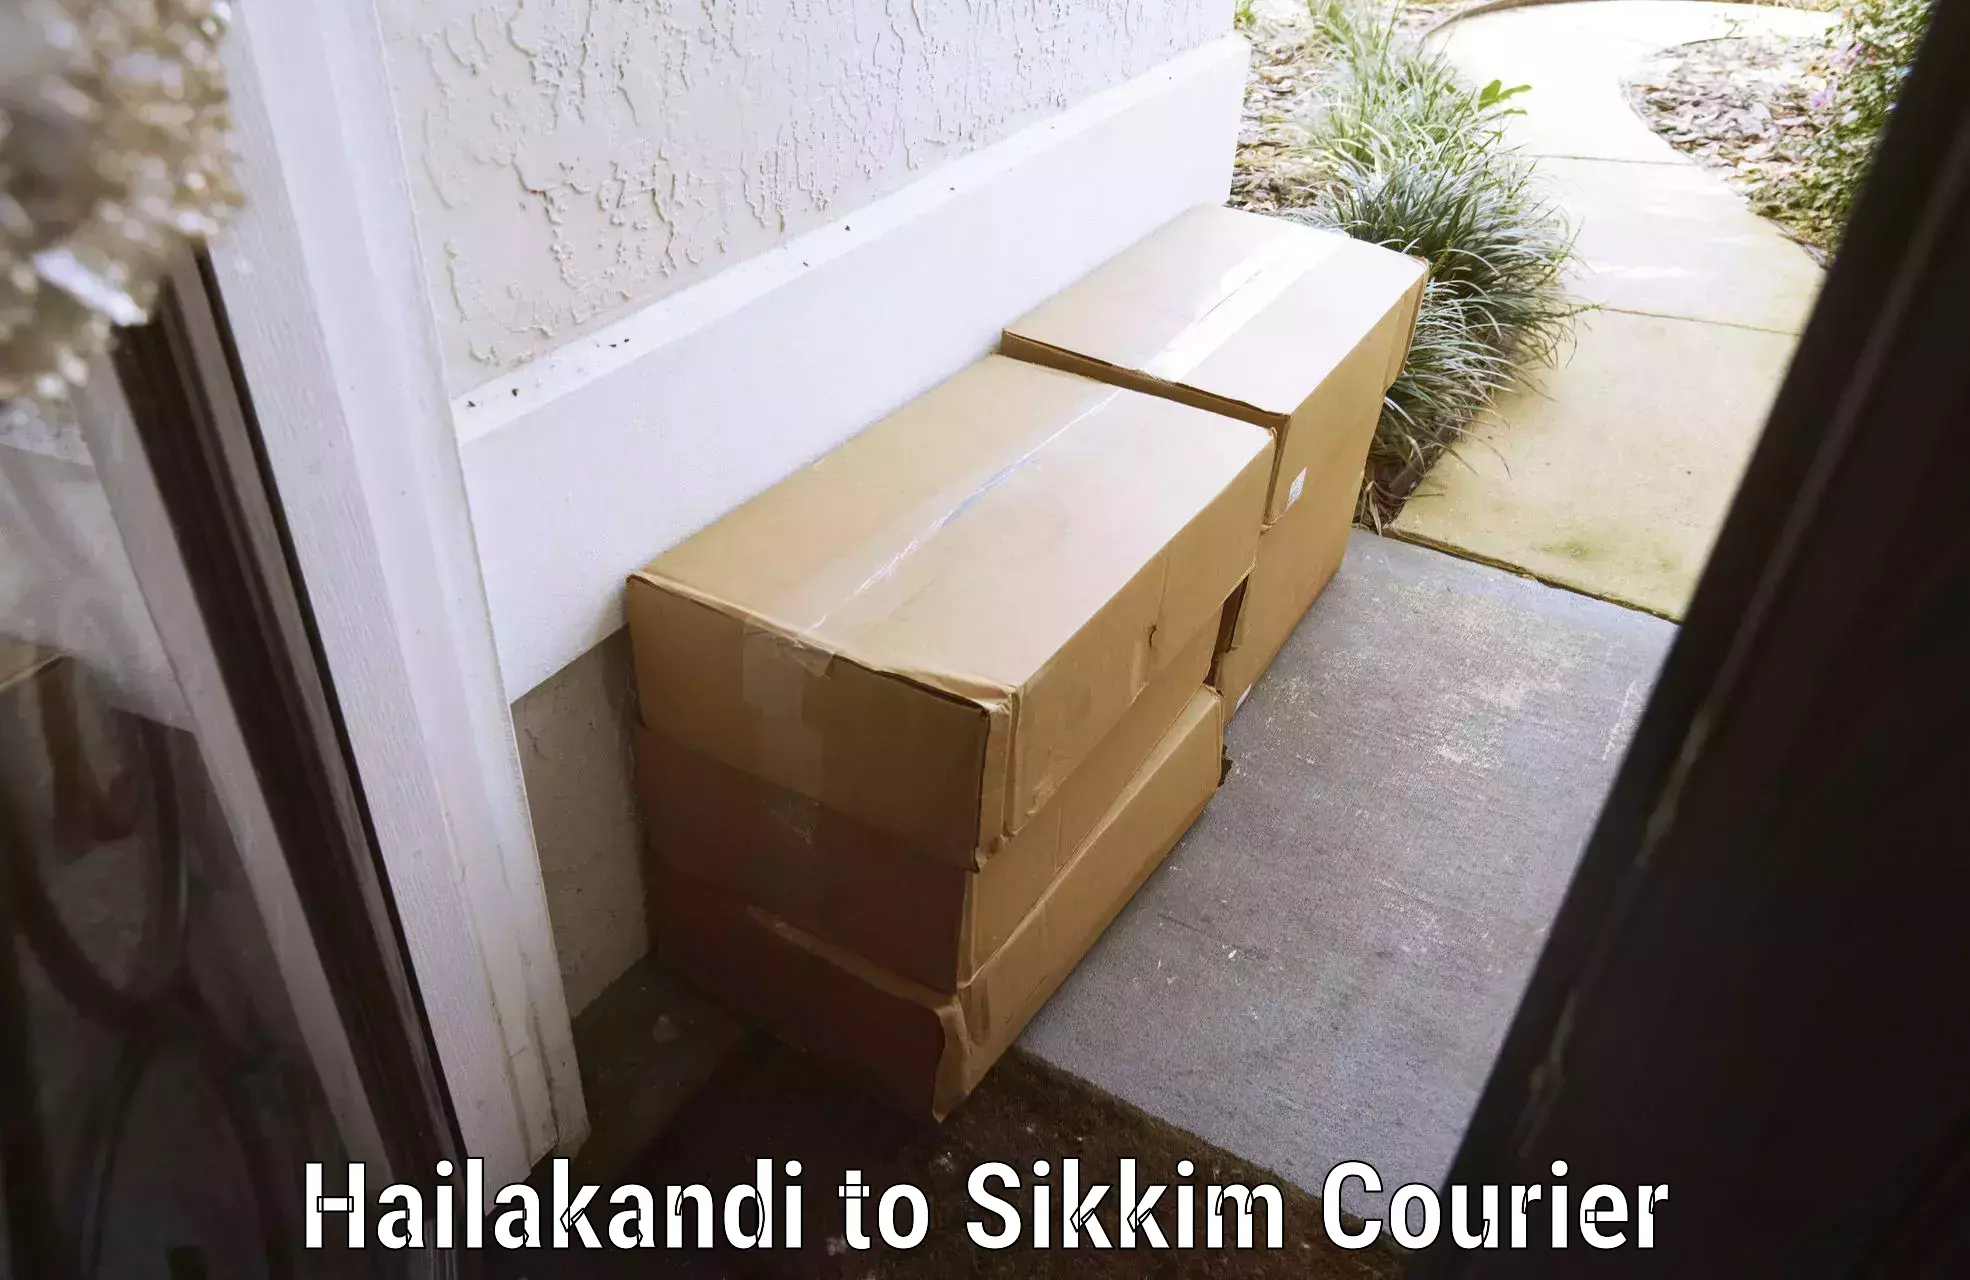 Electronic items luggage shipping Hailakandi to Pelling